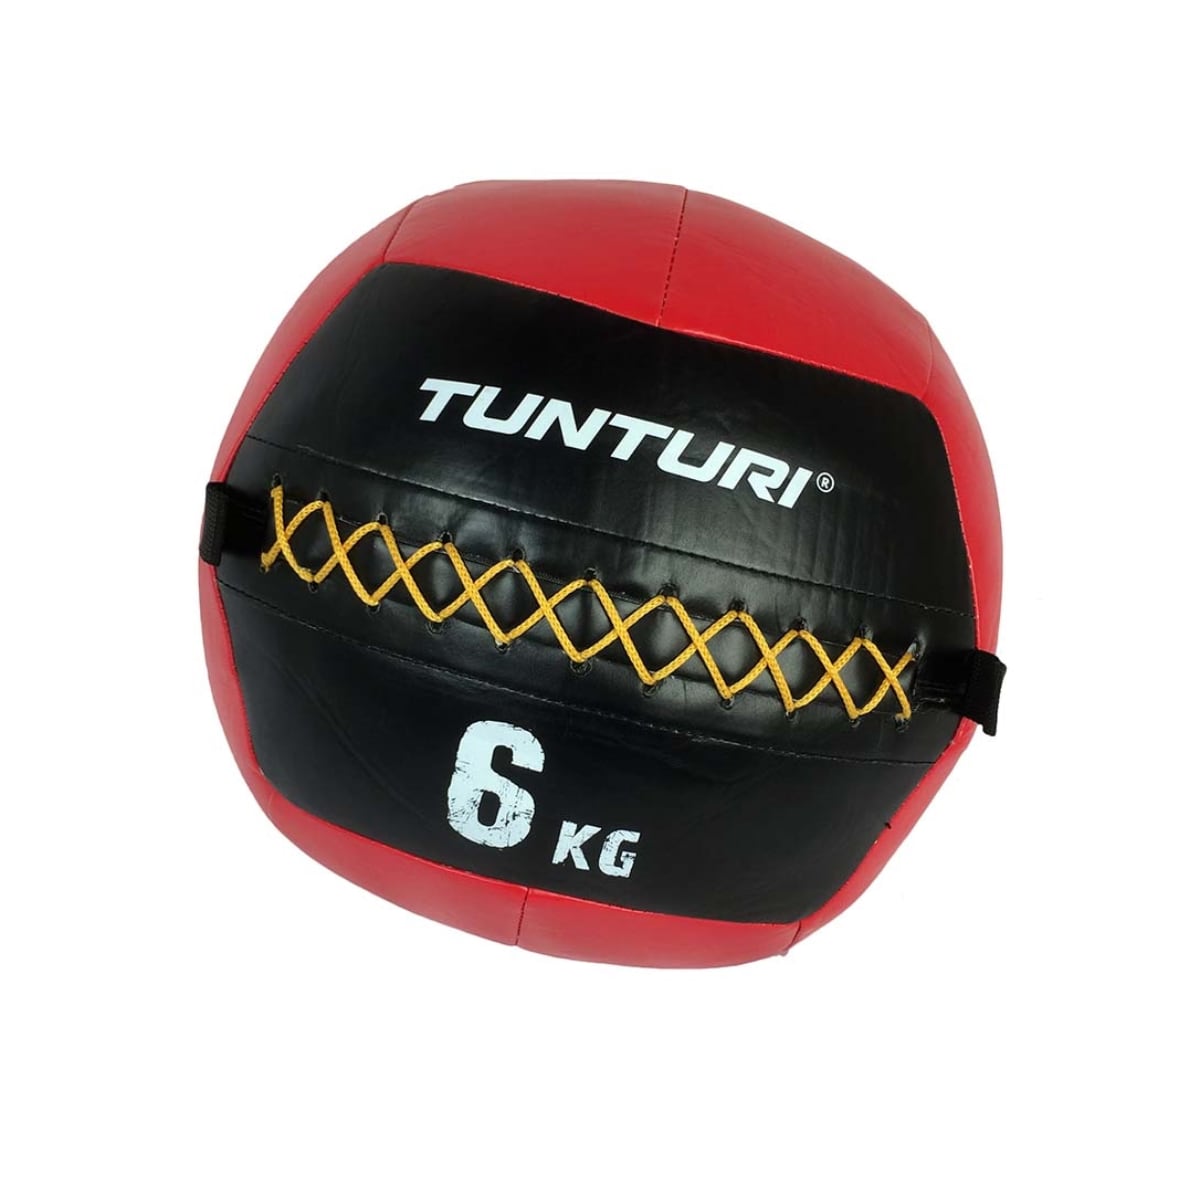 Brug Tunturi Wall Ball 6 kg til en forbedret oplevelse